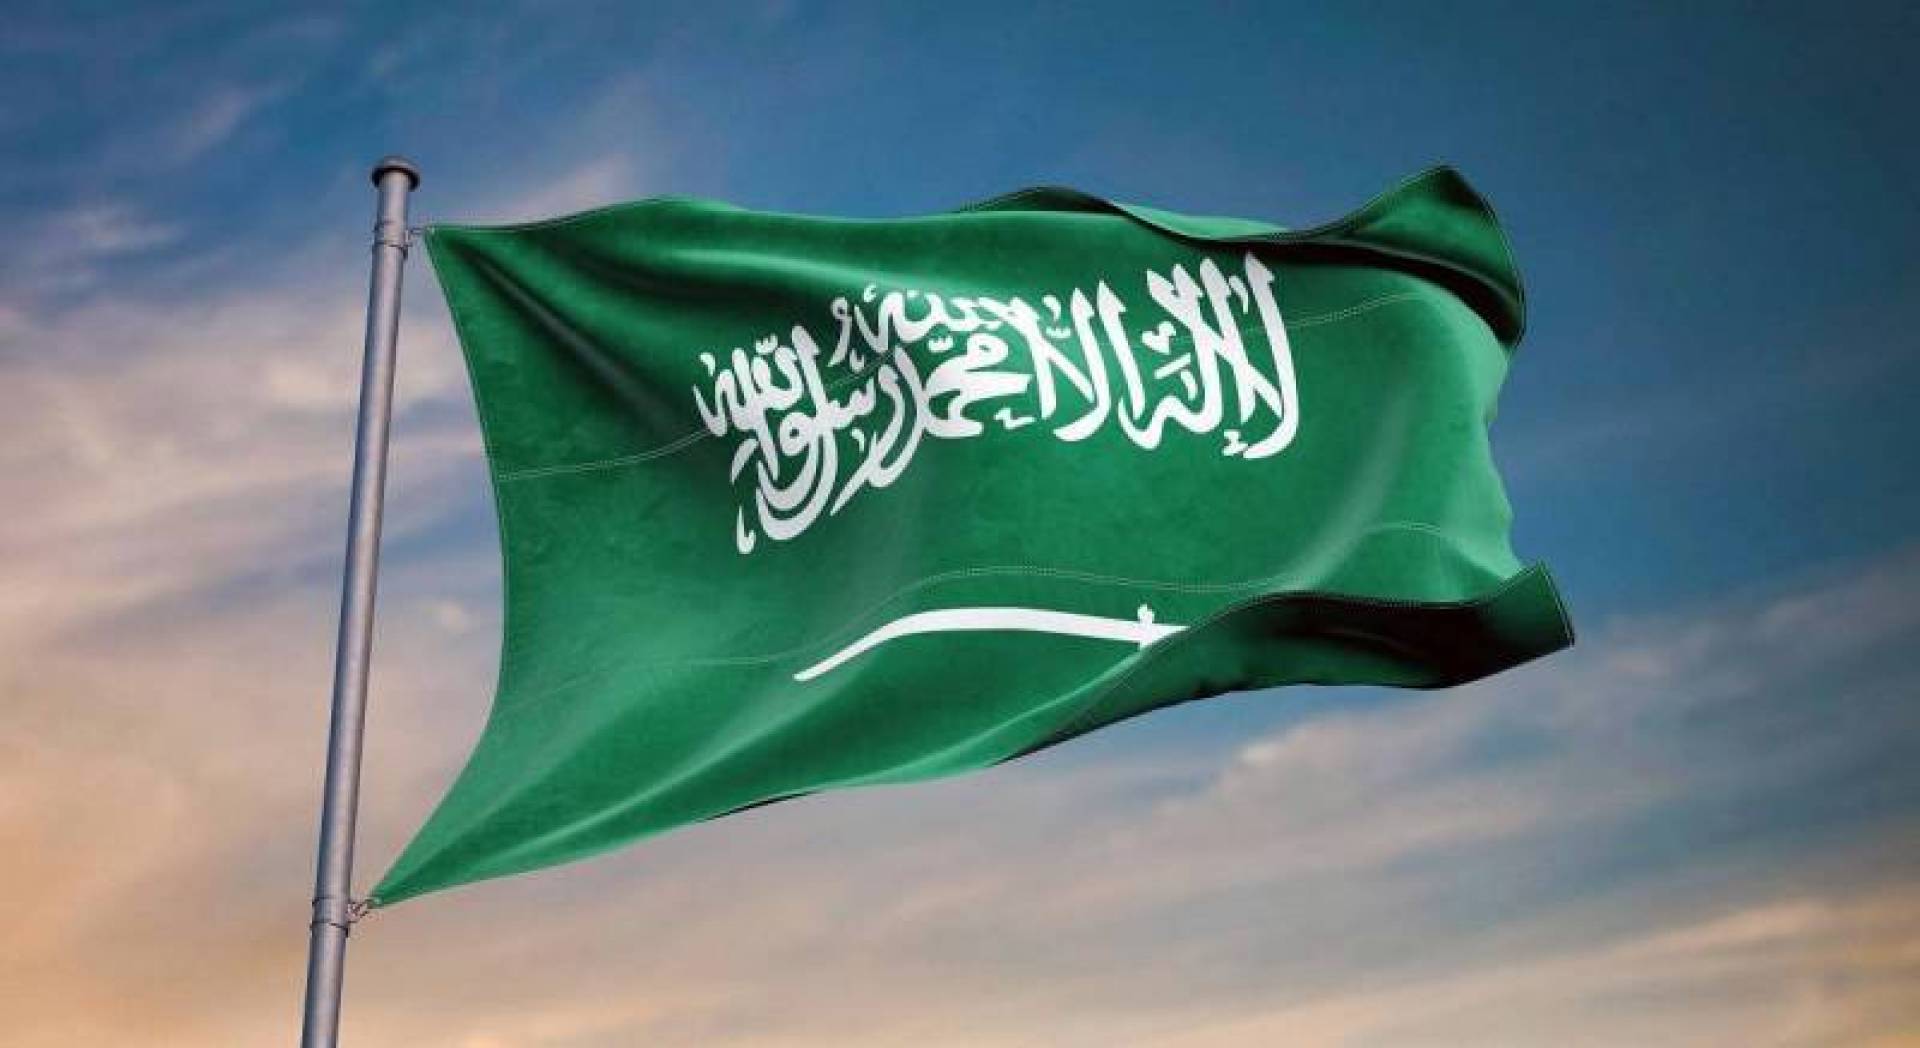 خطة العودة بالسعودية والإجراءات الاحترازية في مكة المكرمة ودليل البروتوكولات الوقائية للقطاعات